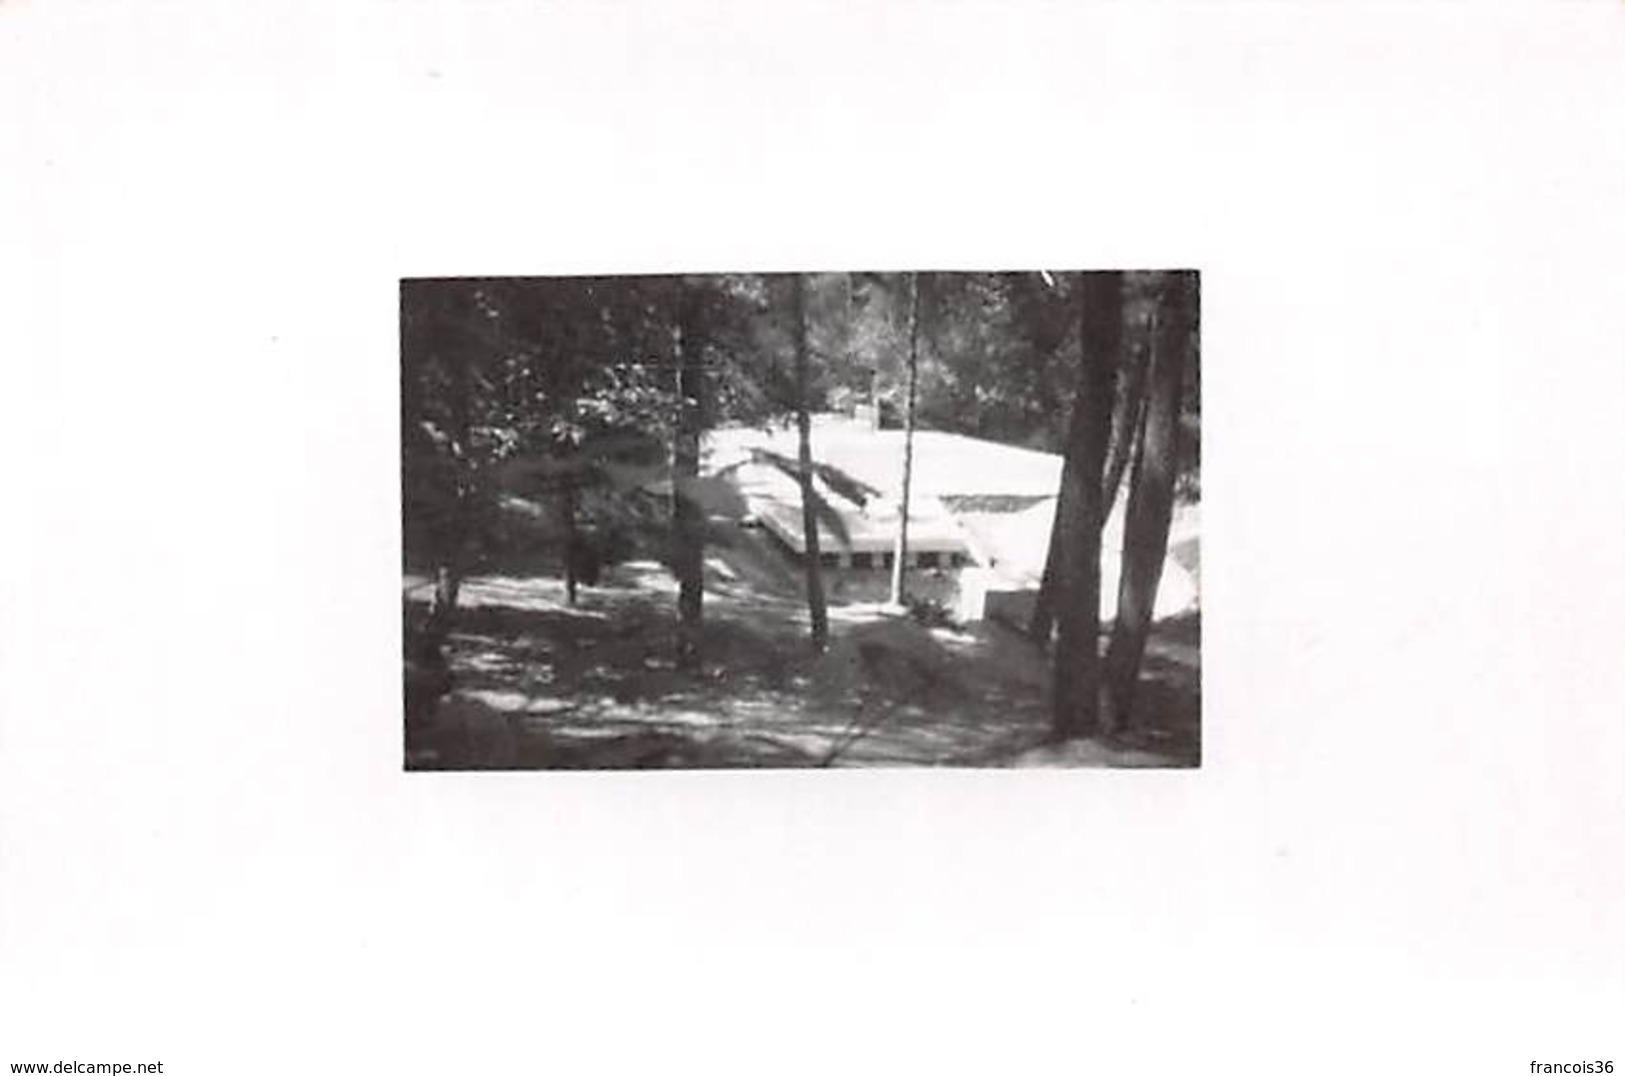 Lot de 17 photos de 1946 à EVANS & ROUFFACH - Ecole de Cadres de Rouffach - Etang du Minerai Exercices militaires